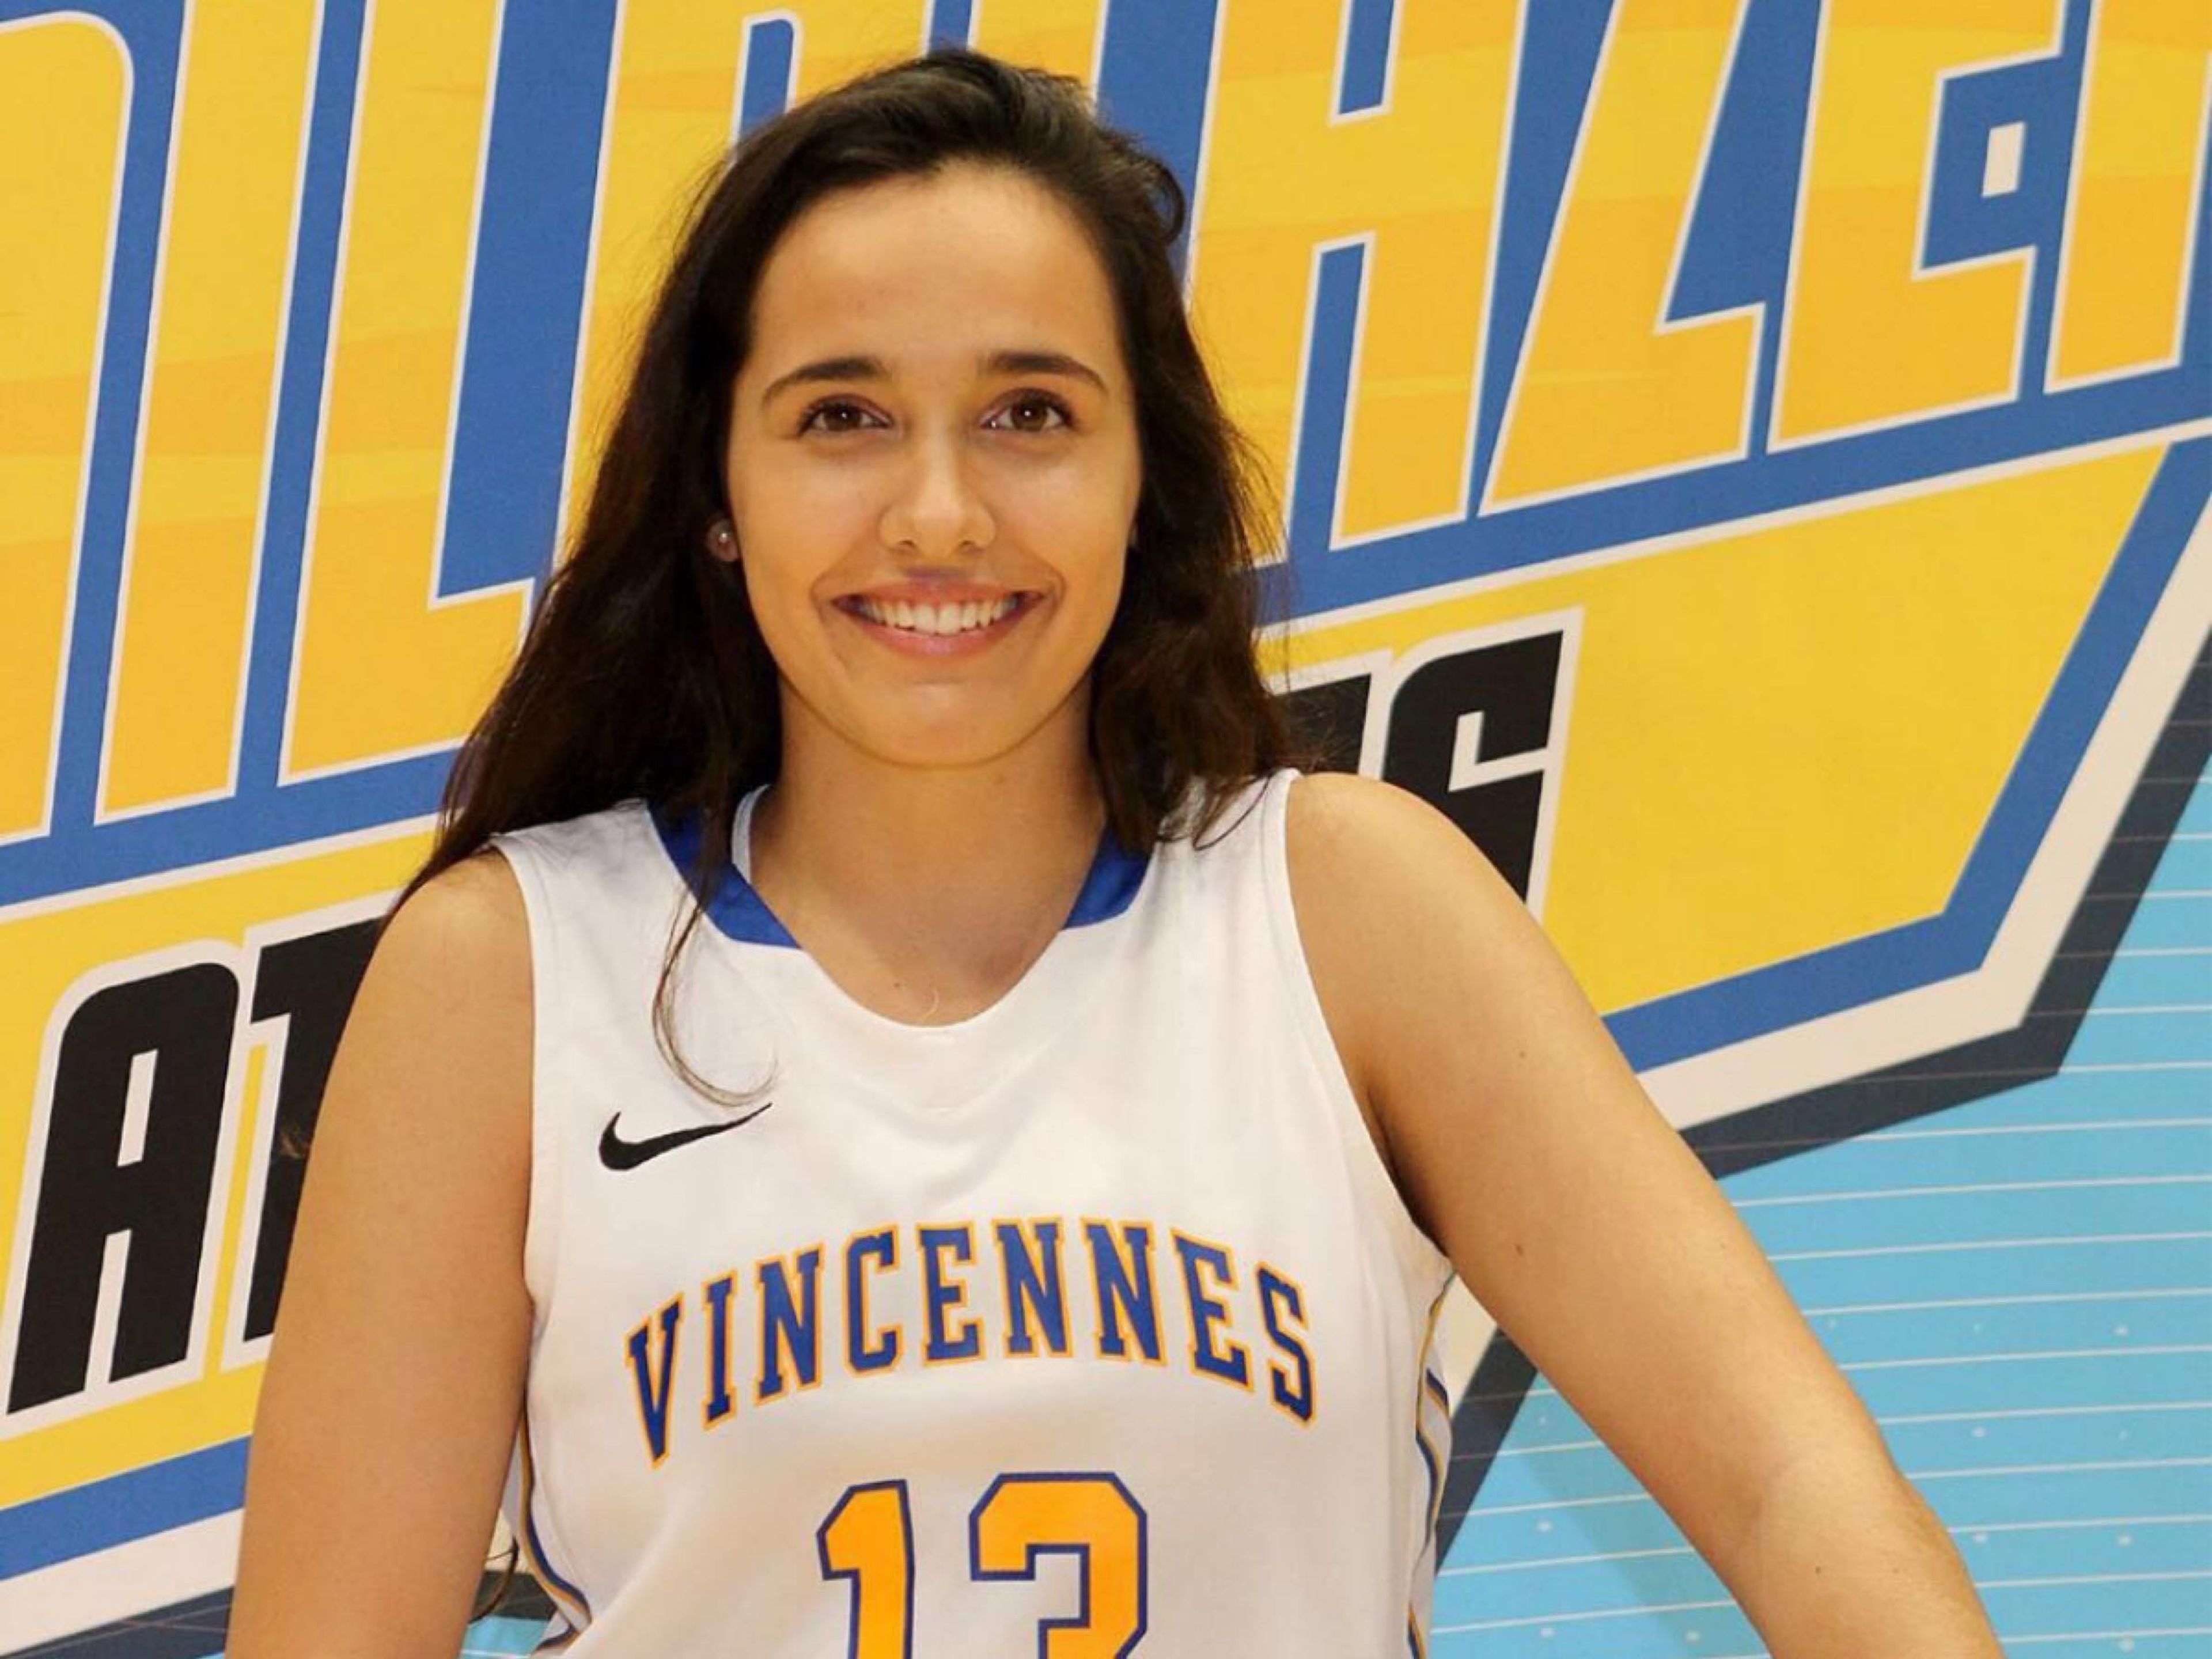 Cristina de la Cruz comenzó Business este verano gracias a una beca de baloncesto en Vincennes University (Indiana)